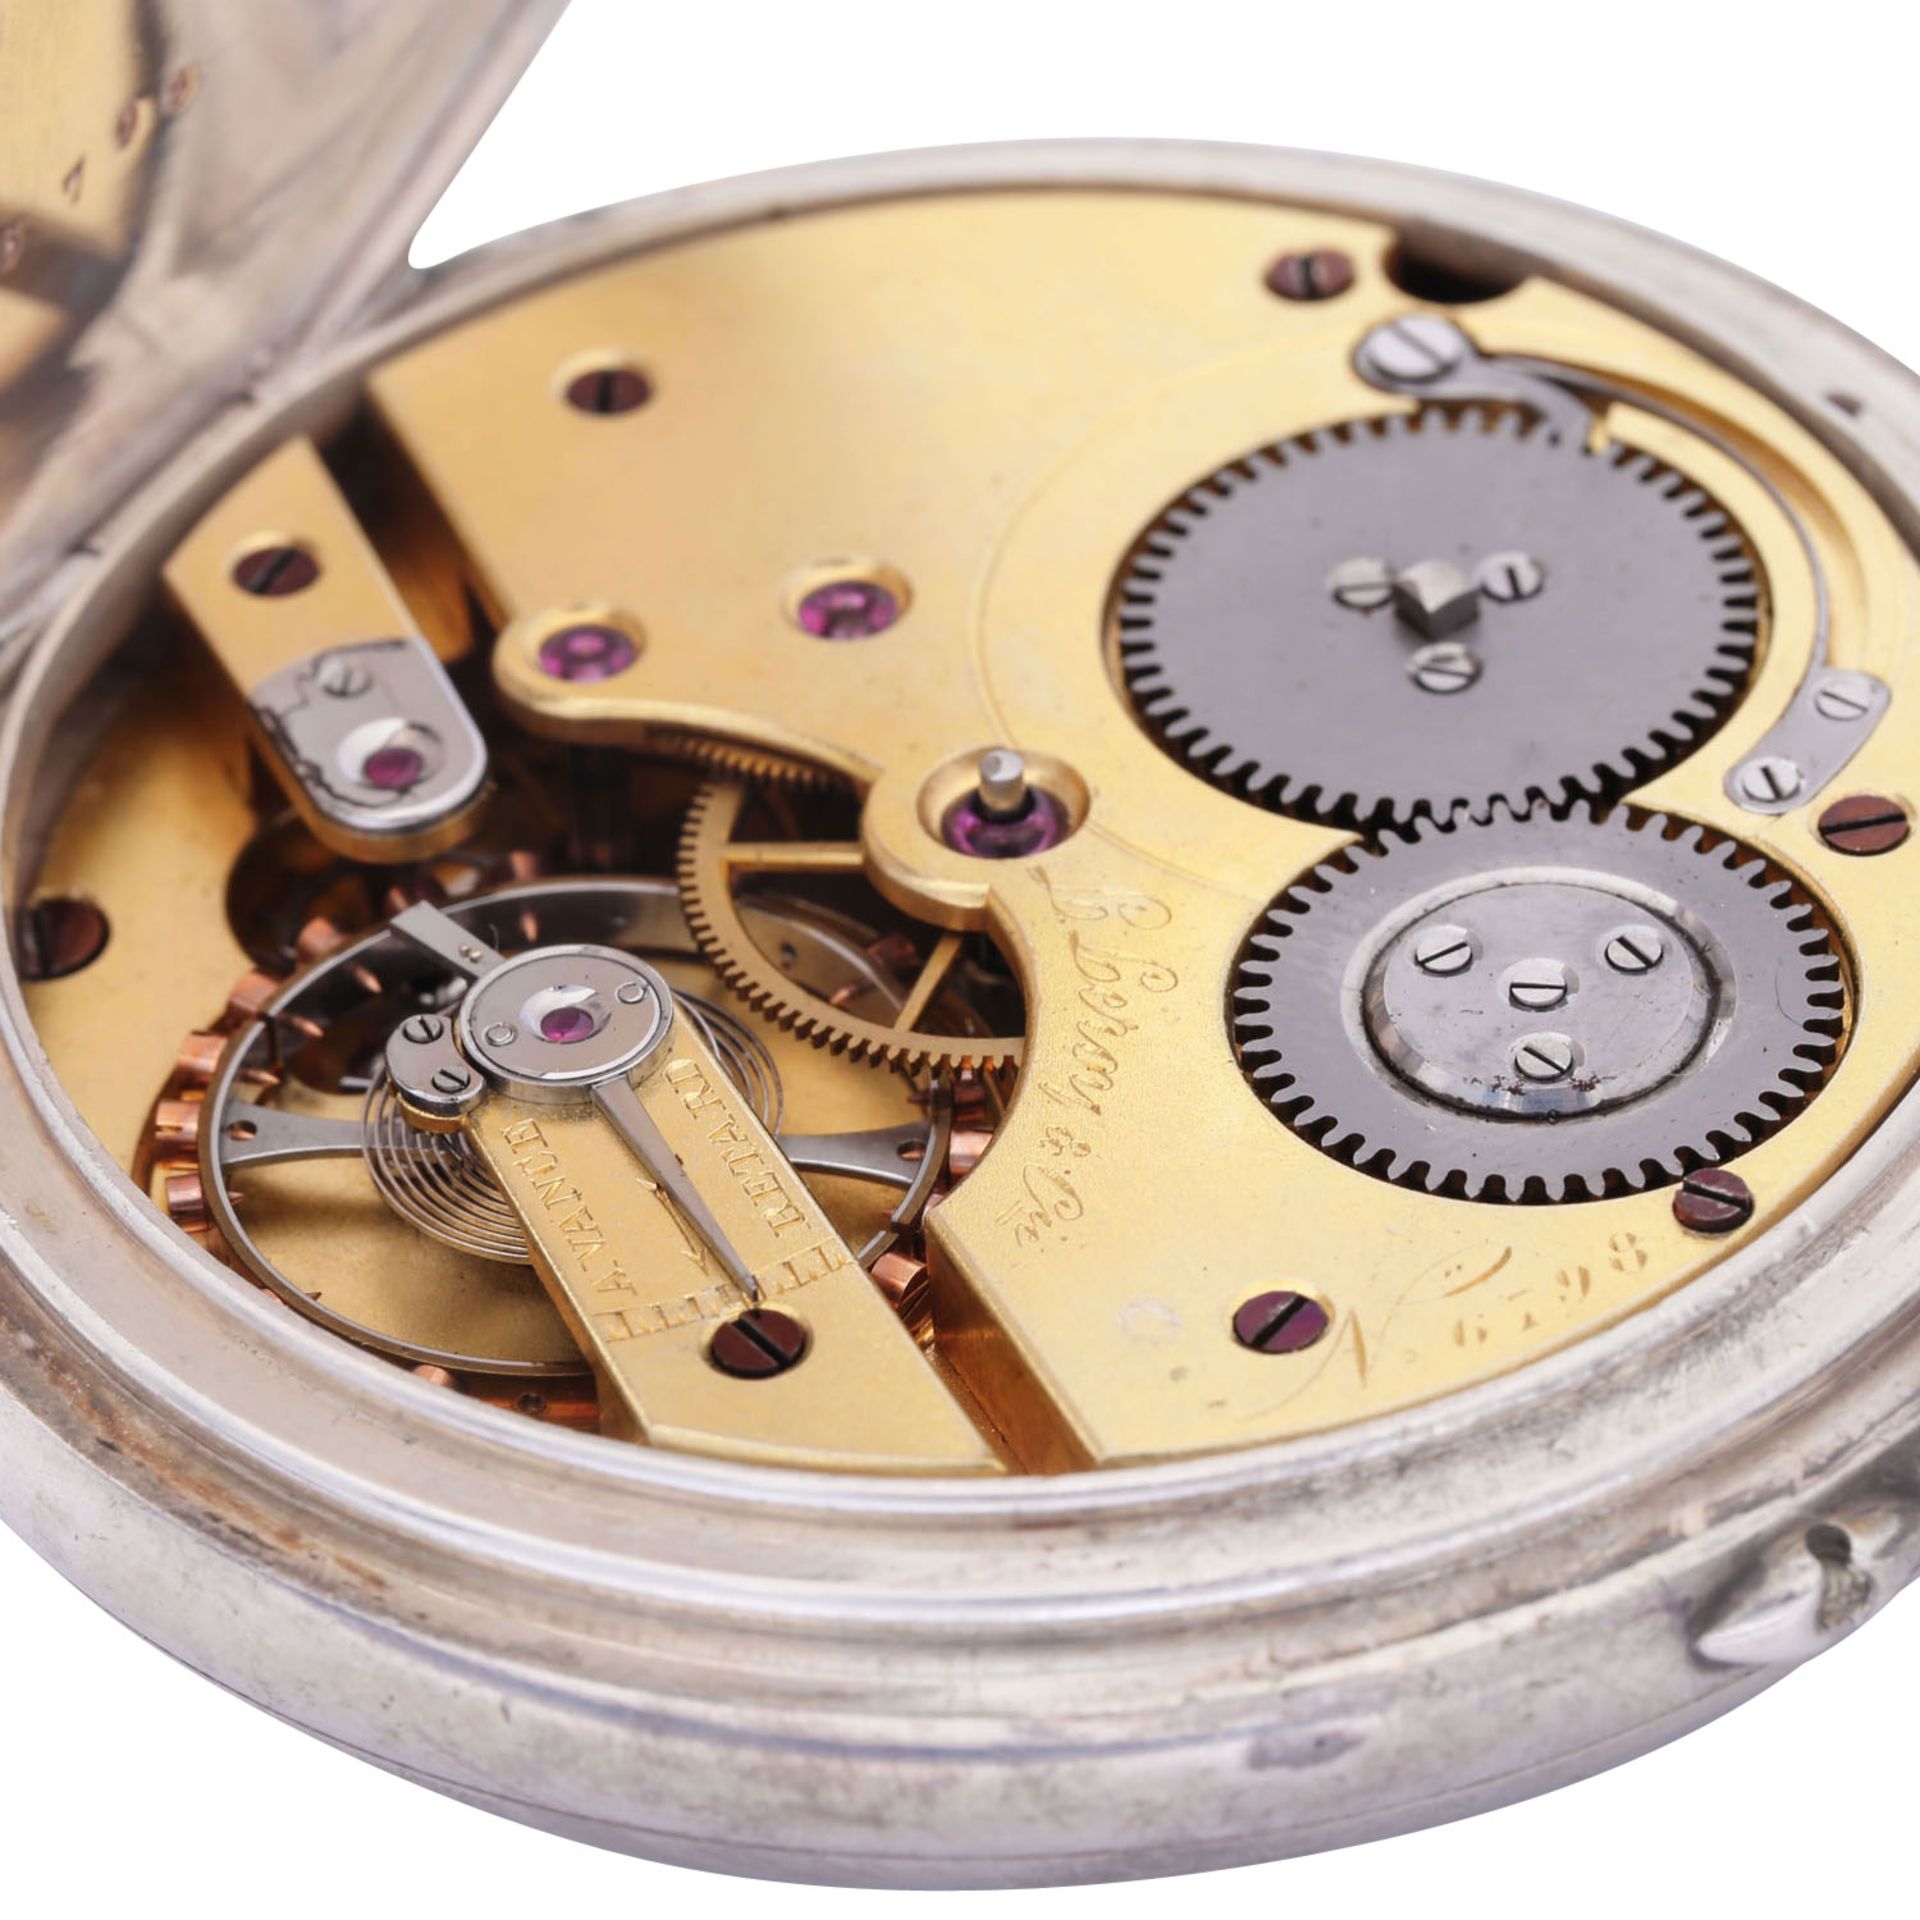 L. LEROY & Cie. Paris sehr seltener, großer und schwerer Taschenuhr Chronometer. Frankreich. - Bild 6 aus 12